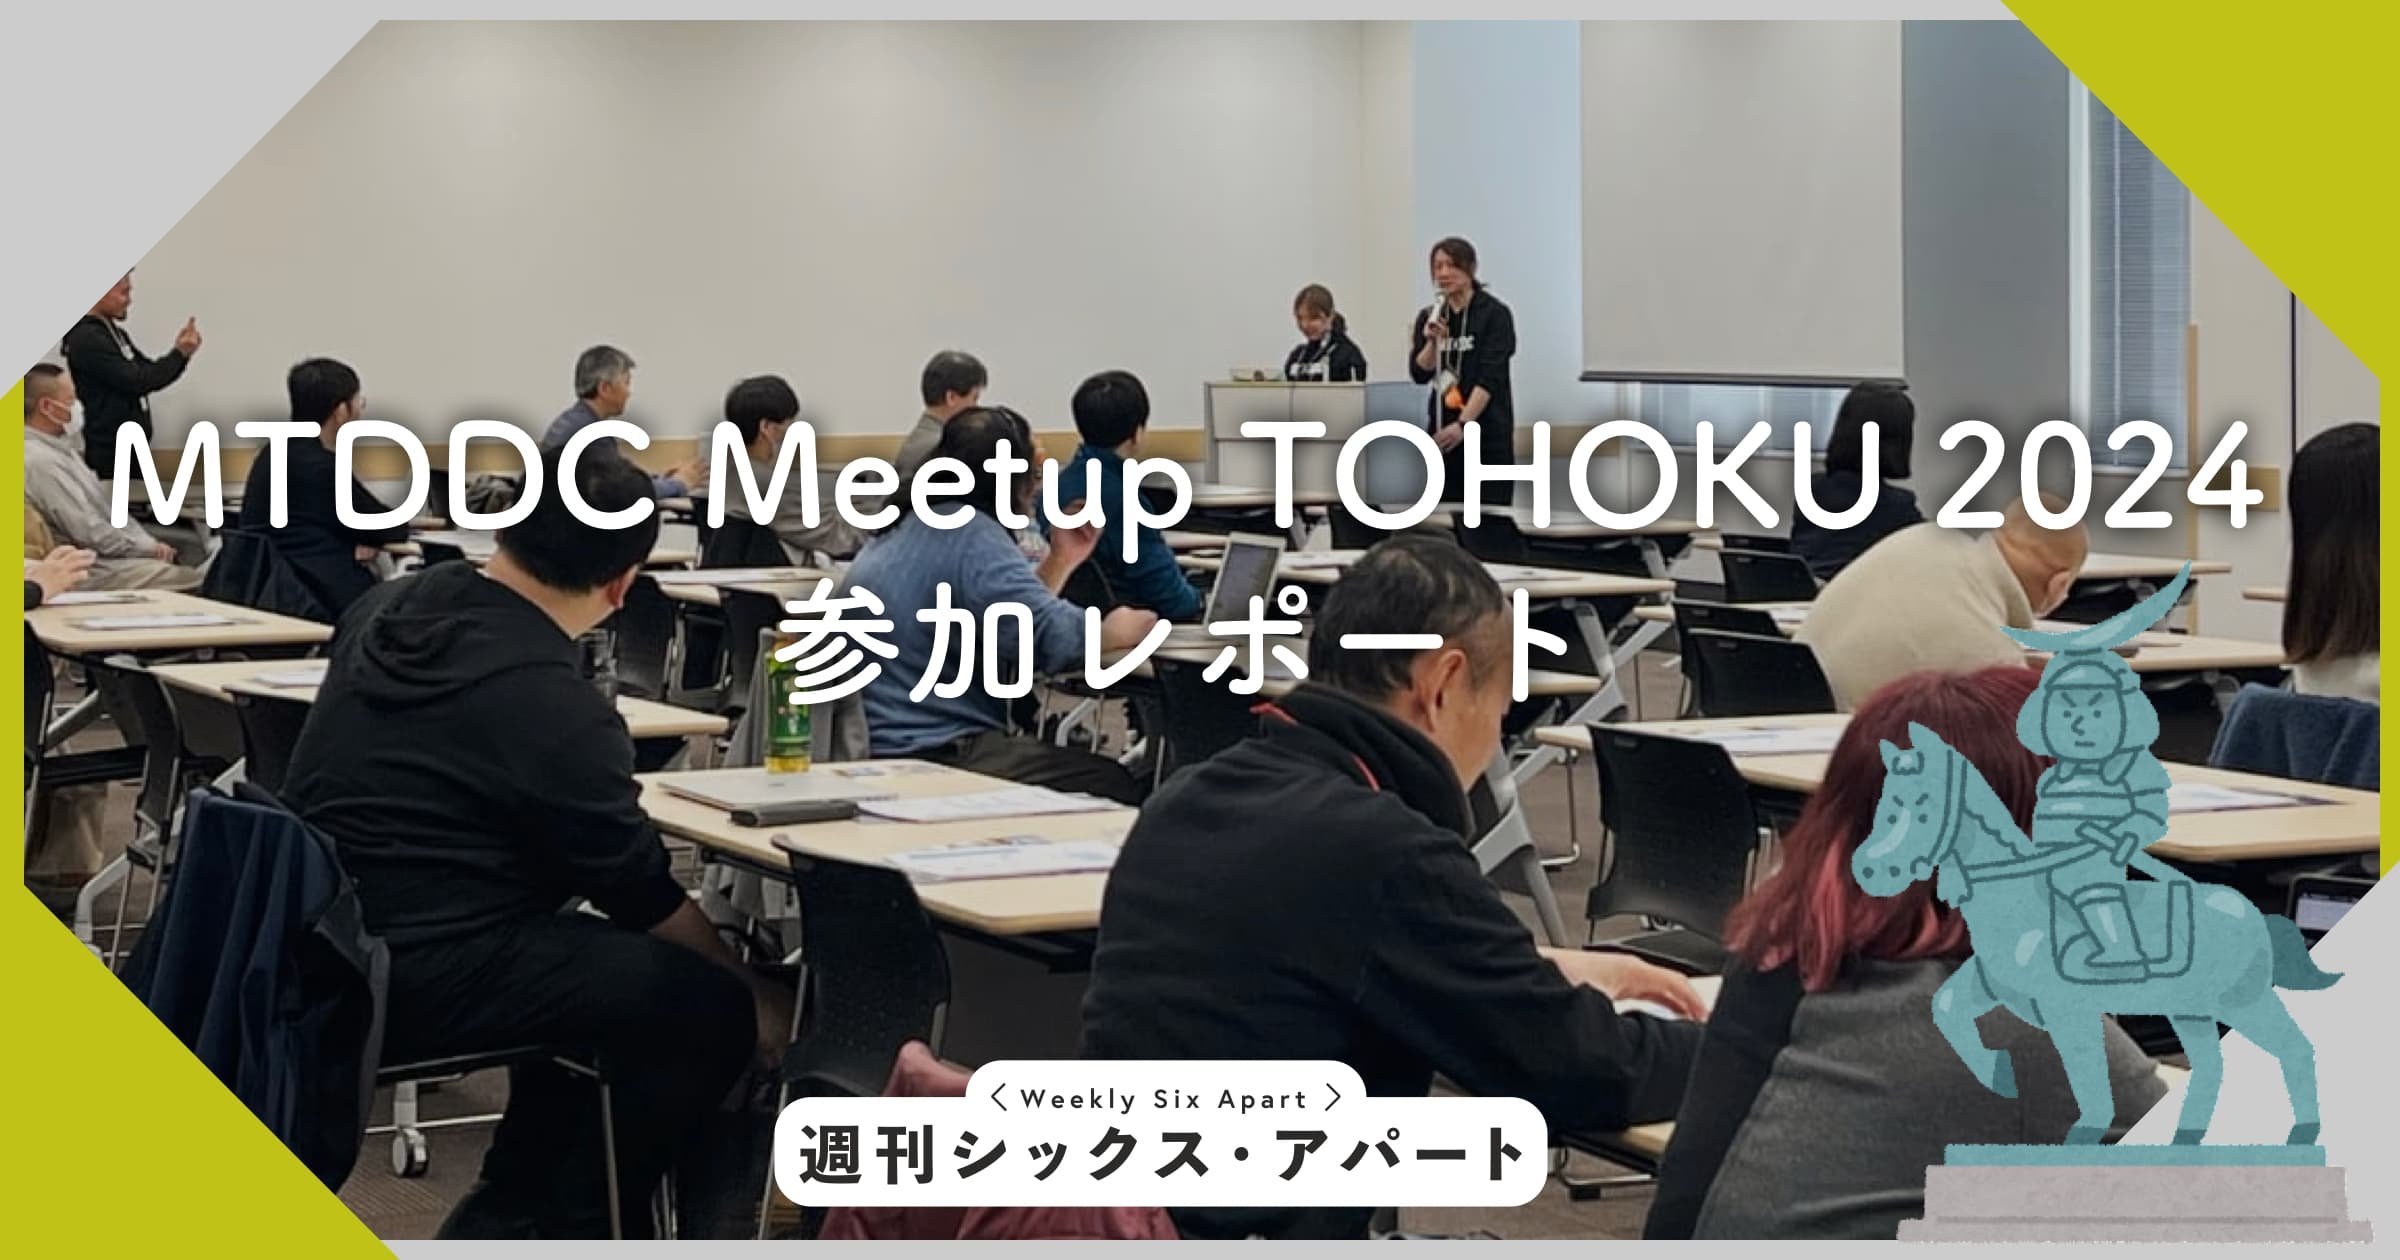 MTDDC Meetup TOHOKU 2024 参加レポート #mtddc #週刊SA